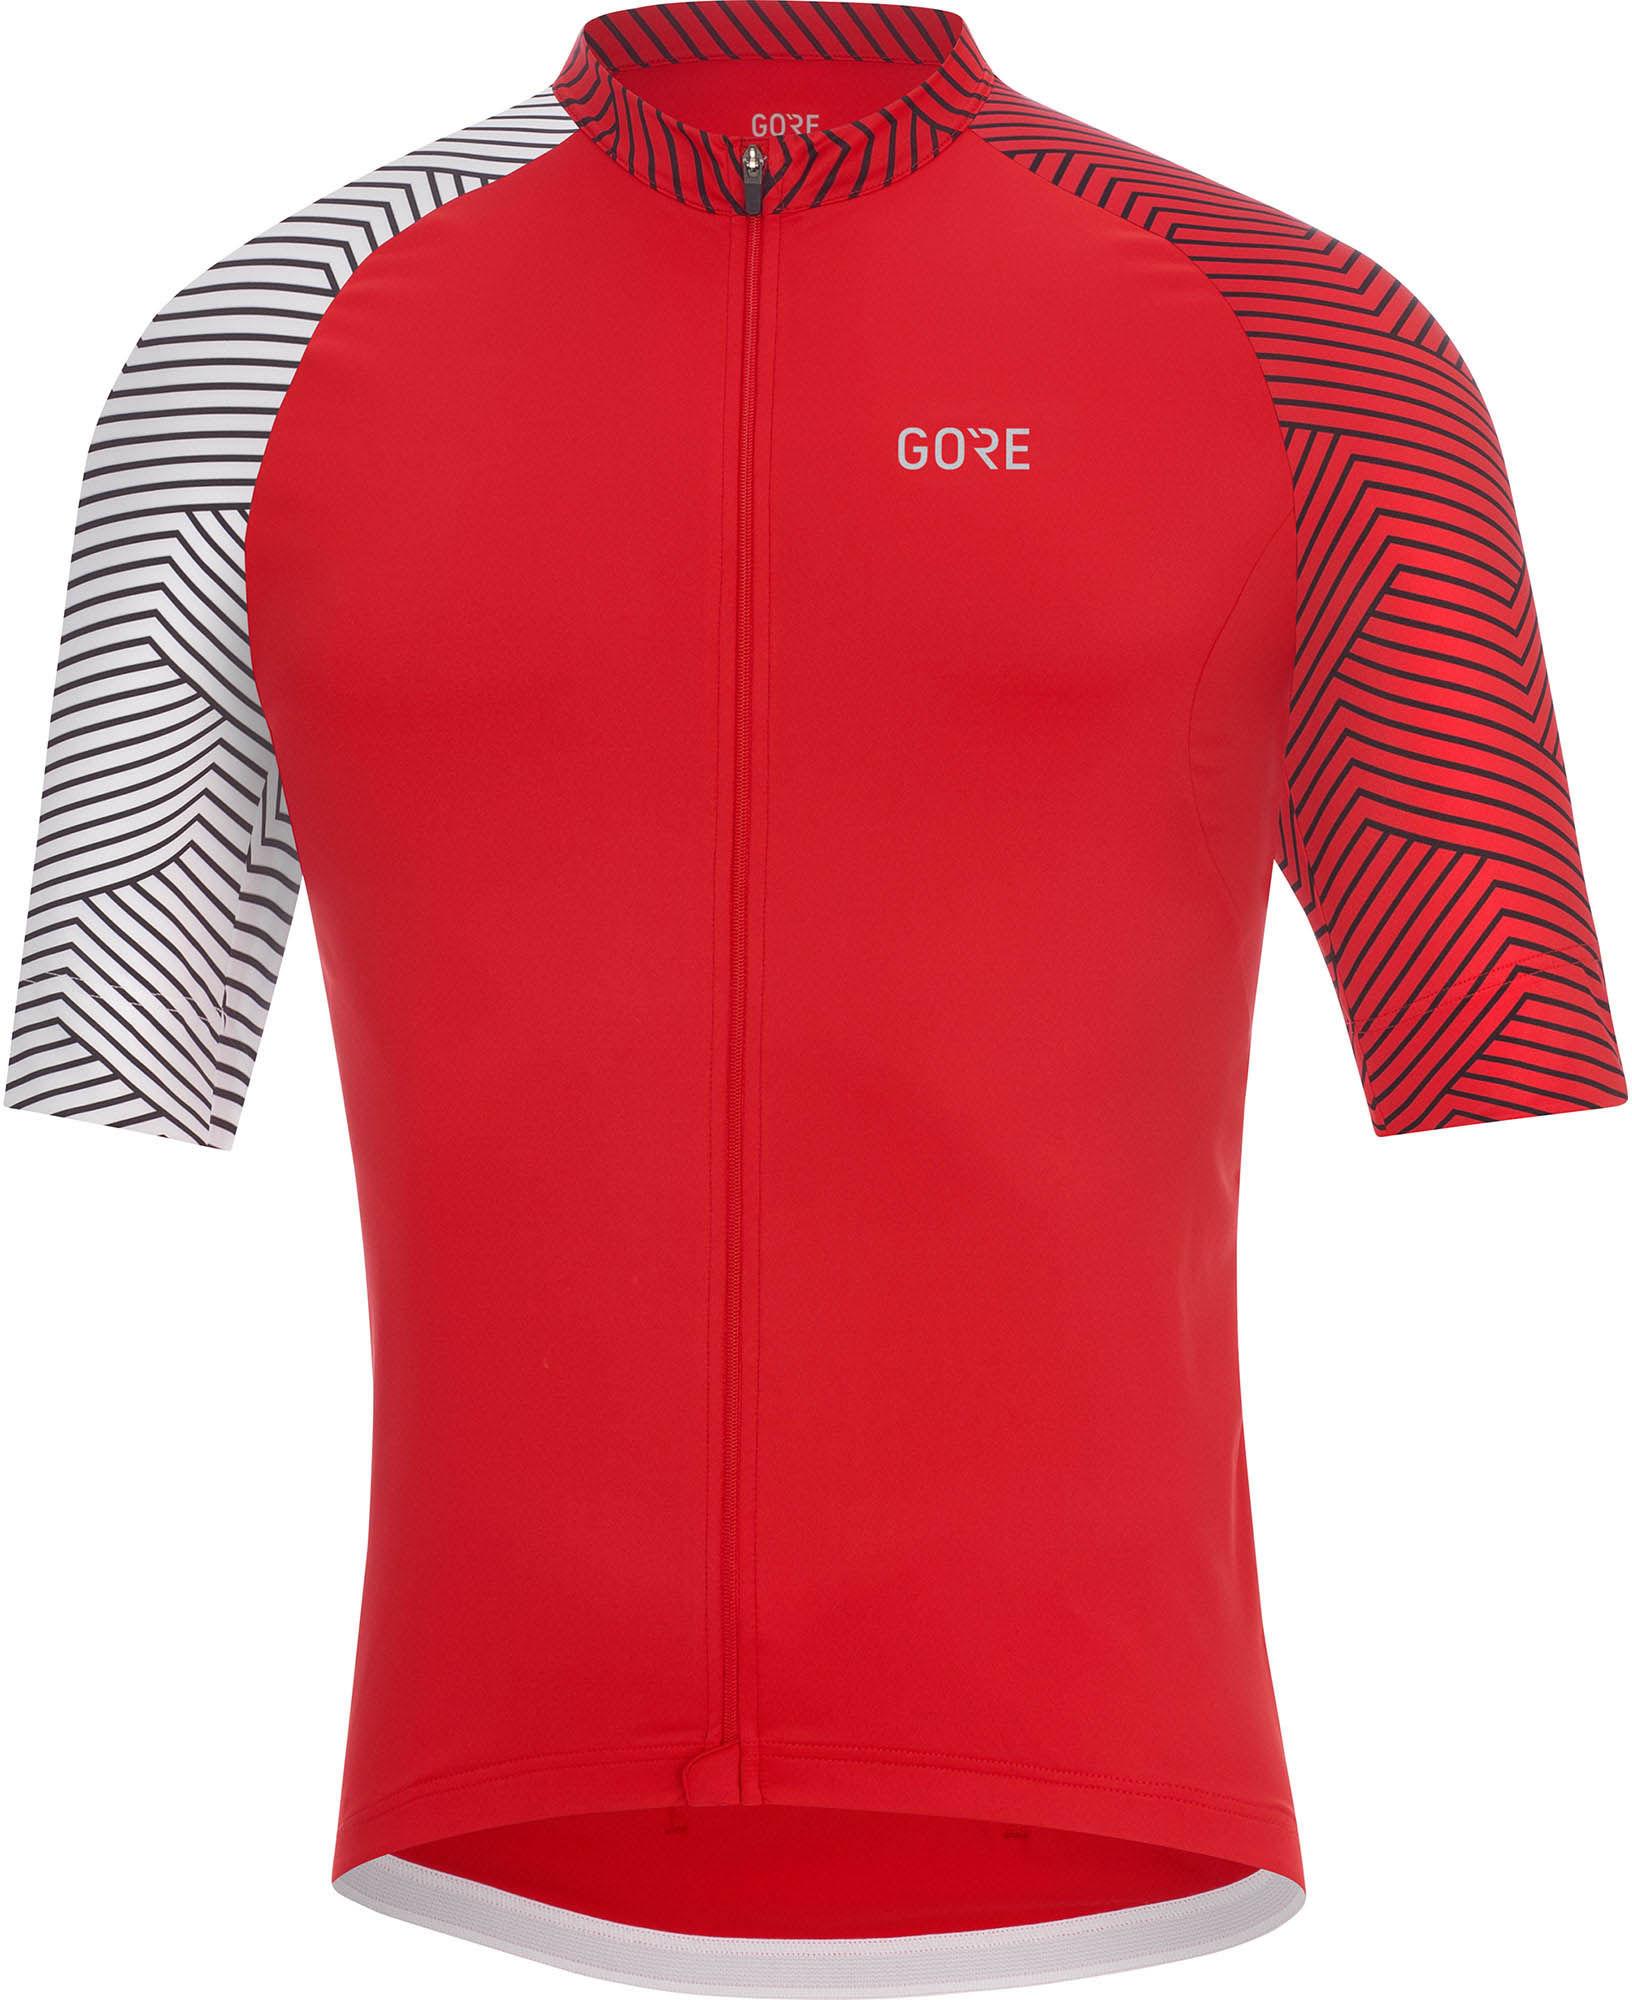 Gorewear C5 Jersey - Red/white